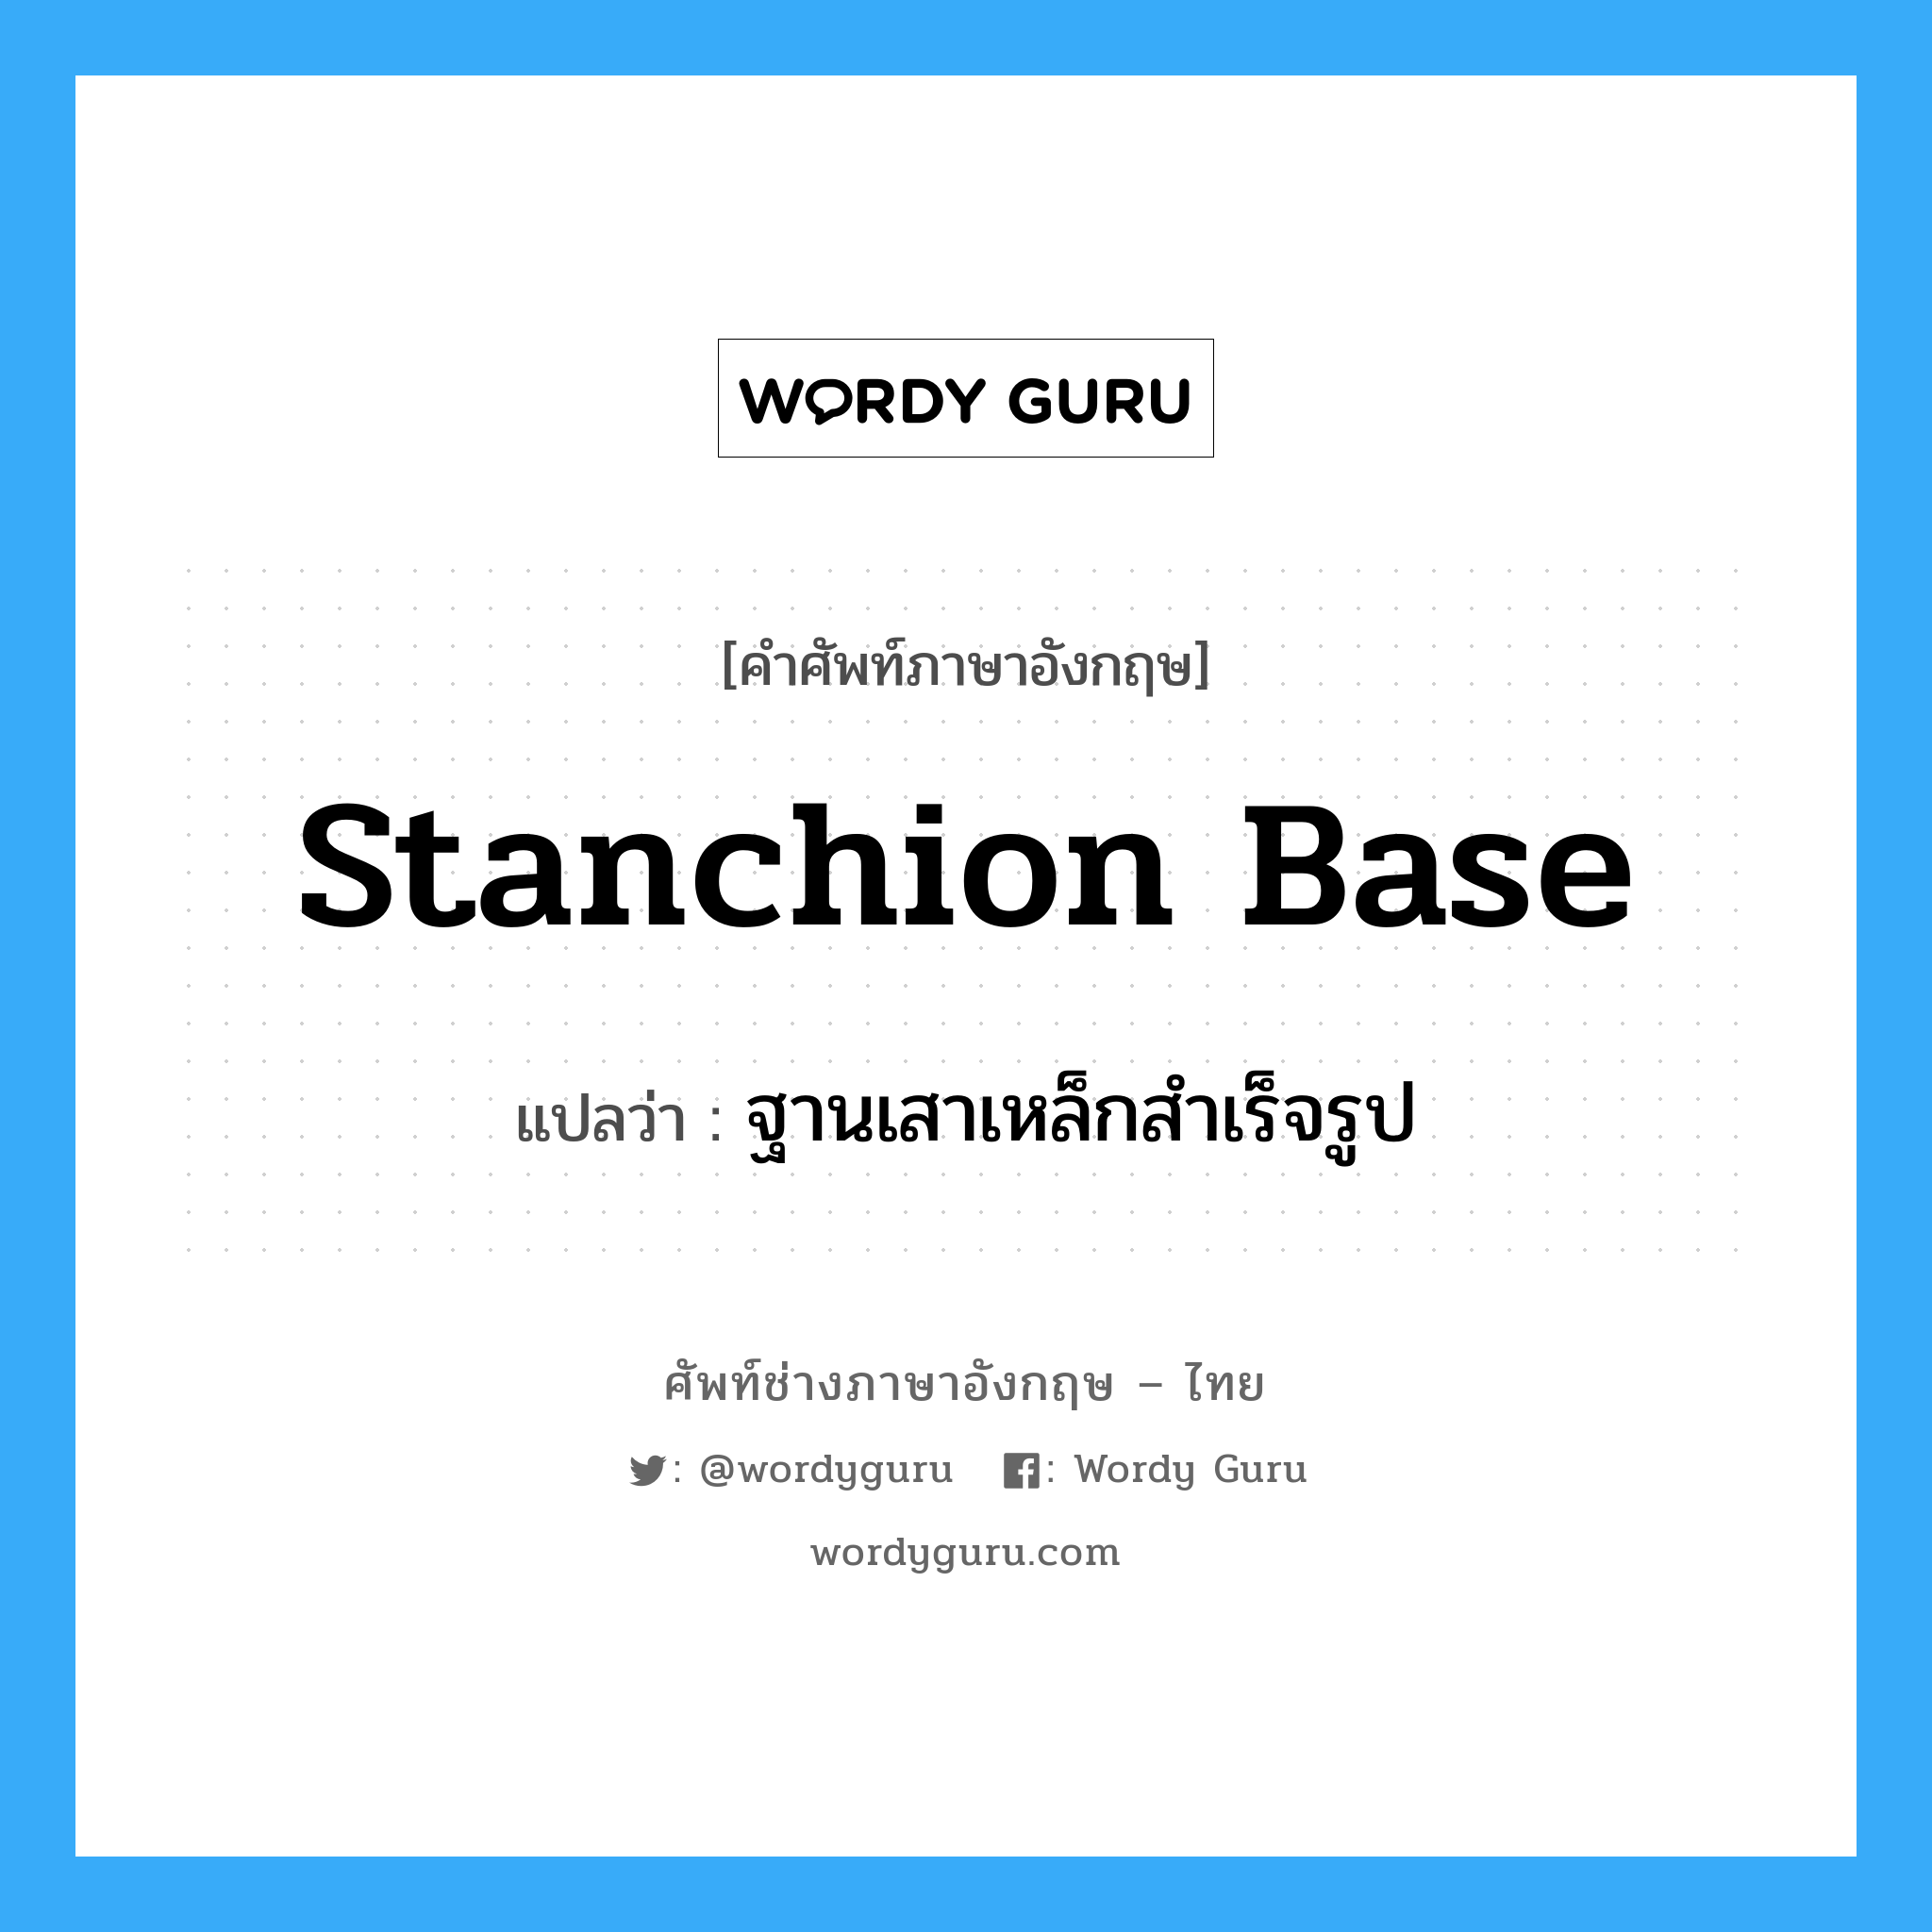 stanchion base แปลว่า?, คำศัพท์ช่างภาษาอังกฤษ - ไทย stanchion base คำศัพท์ภาษาอังกฤษ stanchion base แปลว่า ฐานเสาเหล็กสำเร็จรูป